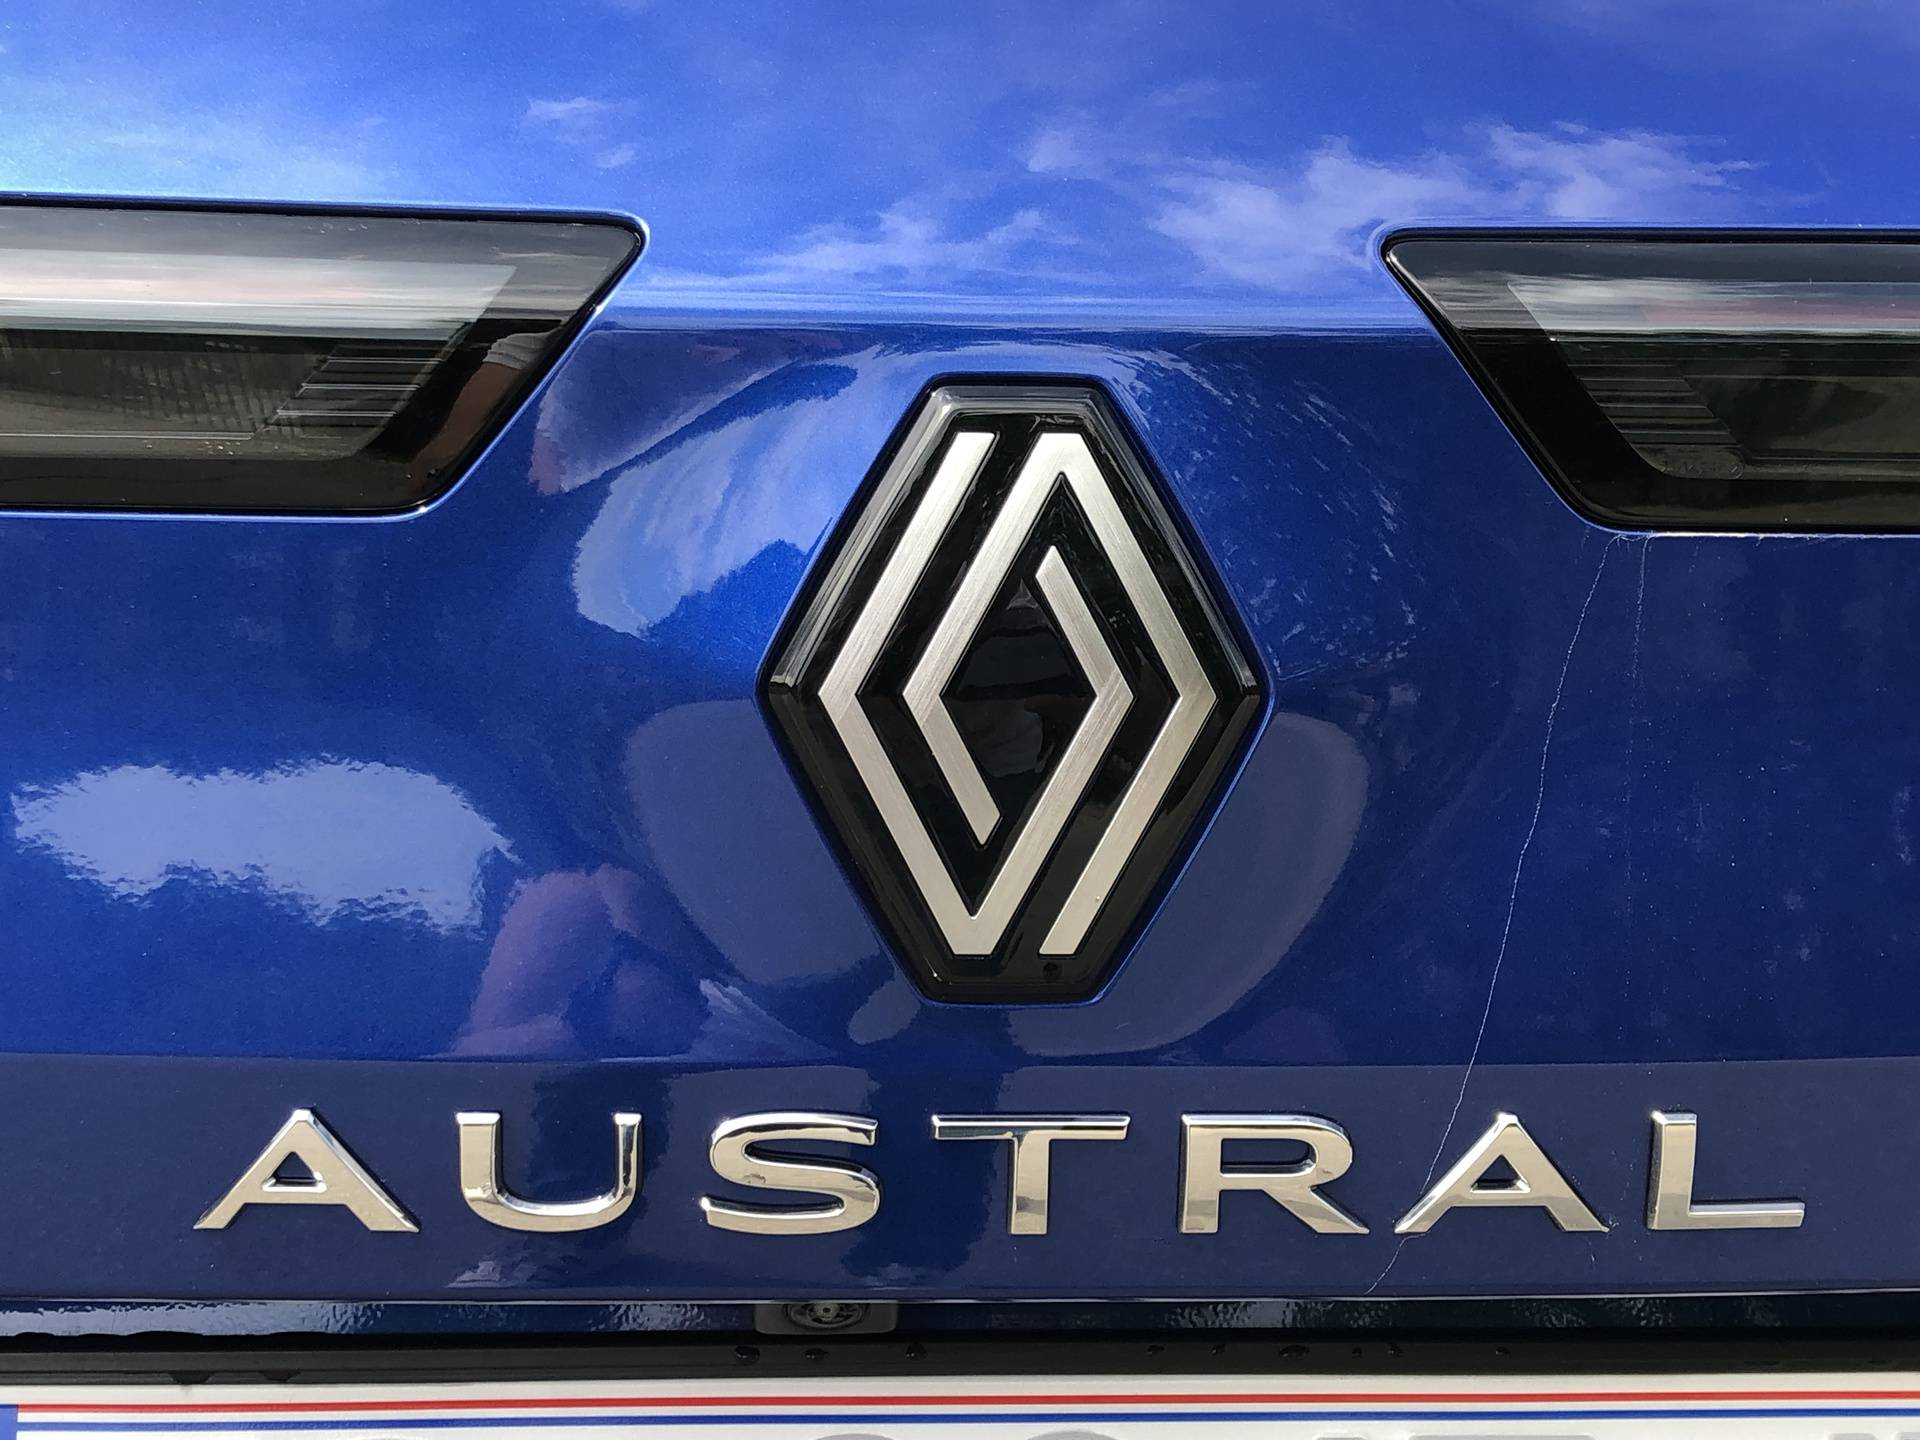 Testirali smo: Renault Austral je trenutno najbolji francuski SUV